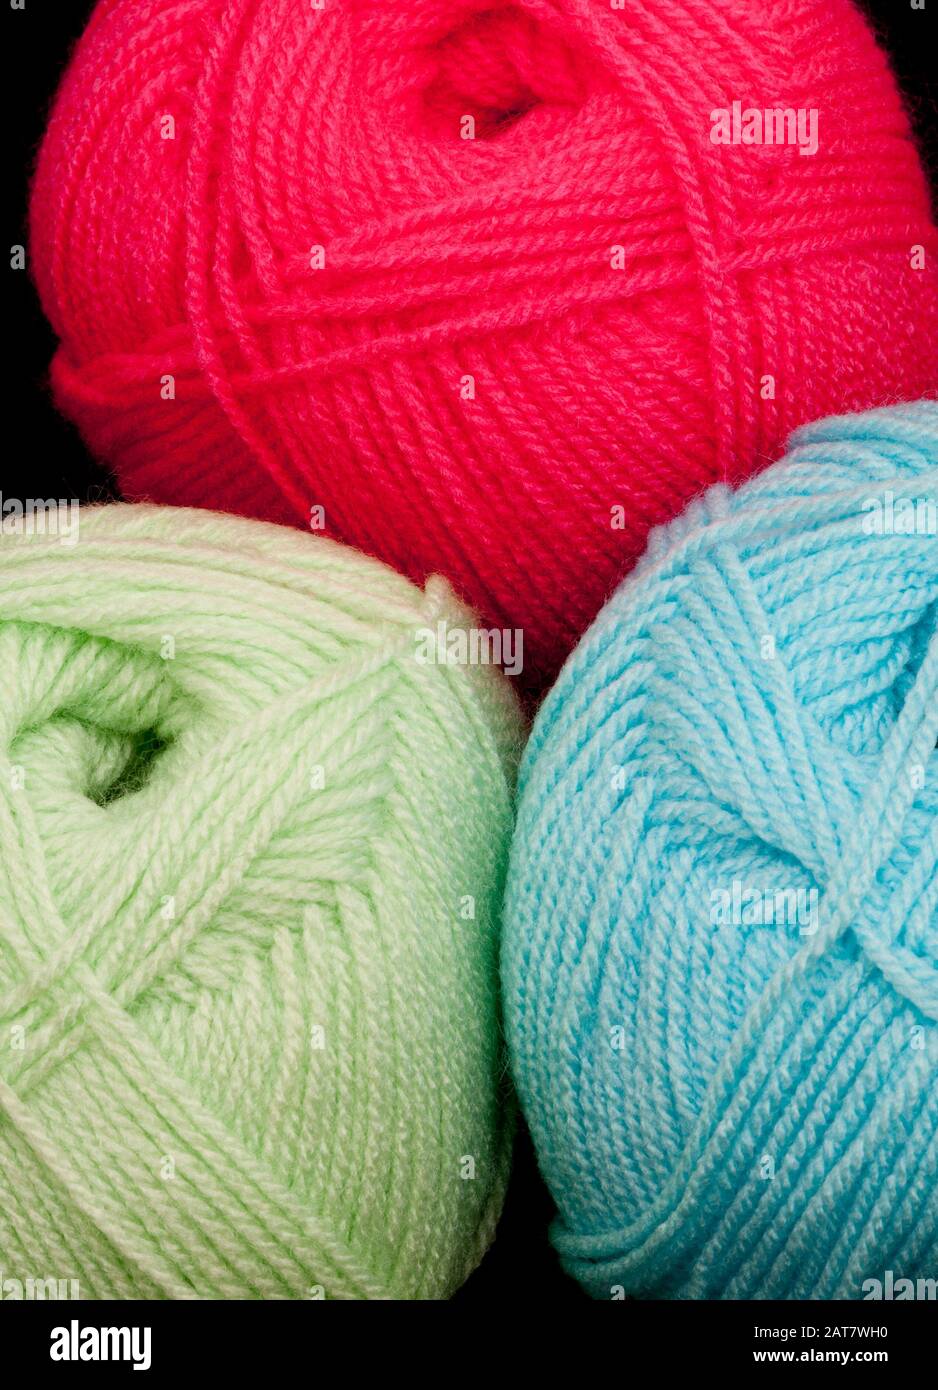 Boules de laine colorée Banque D'Images